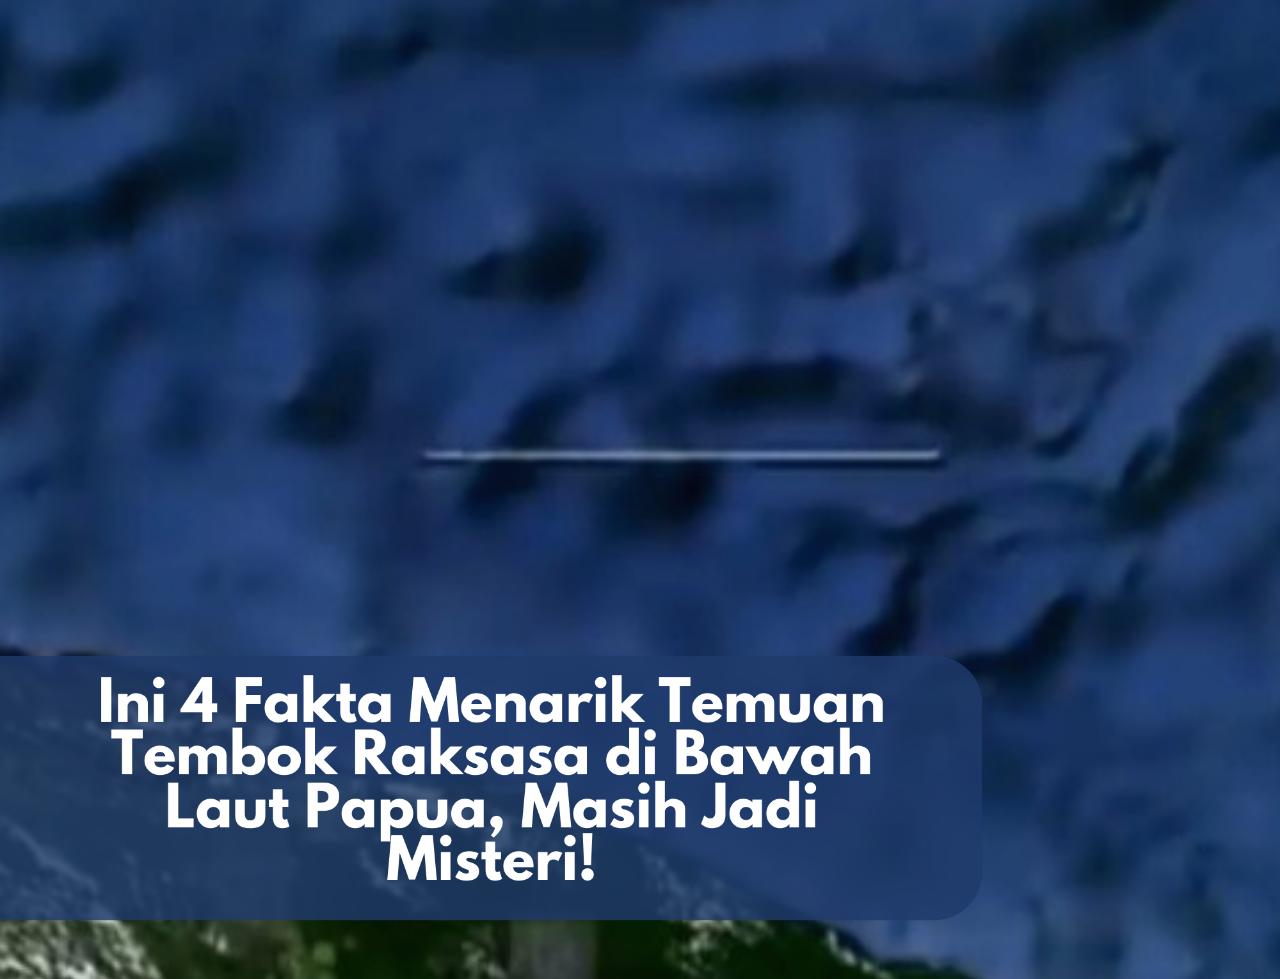 Masih Jadi Misteri! Ini 4 Fakta Menarik Temuan Tembok Raksasa di Bawah Laut Papua